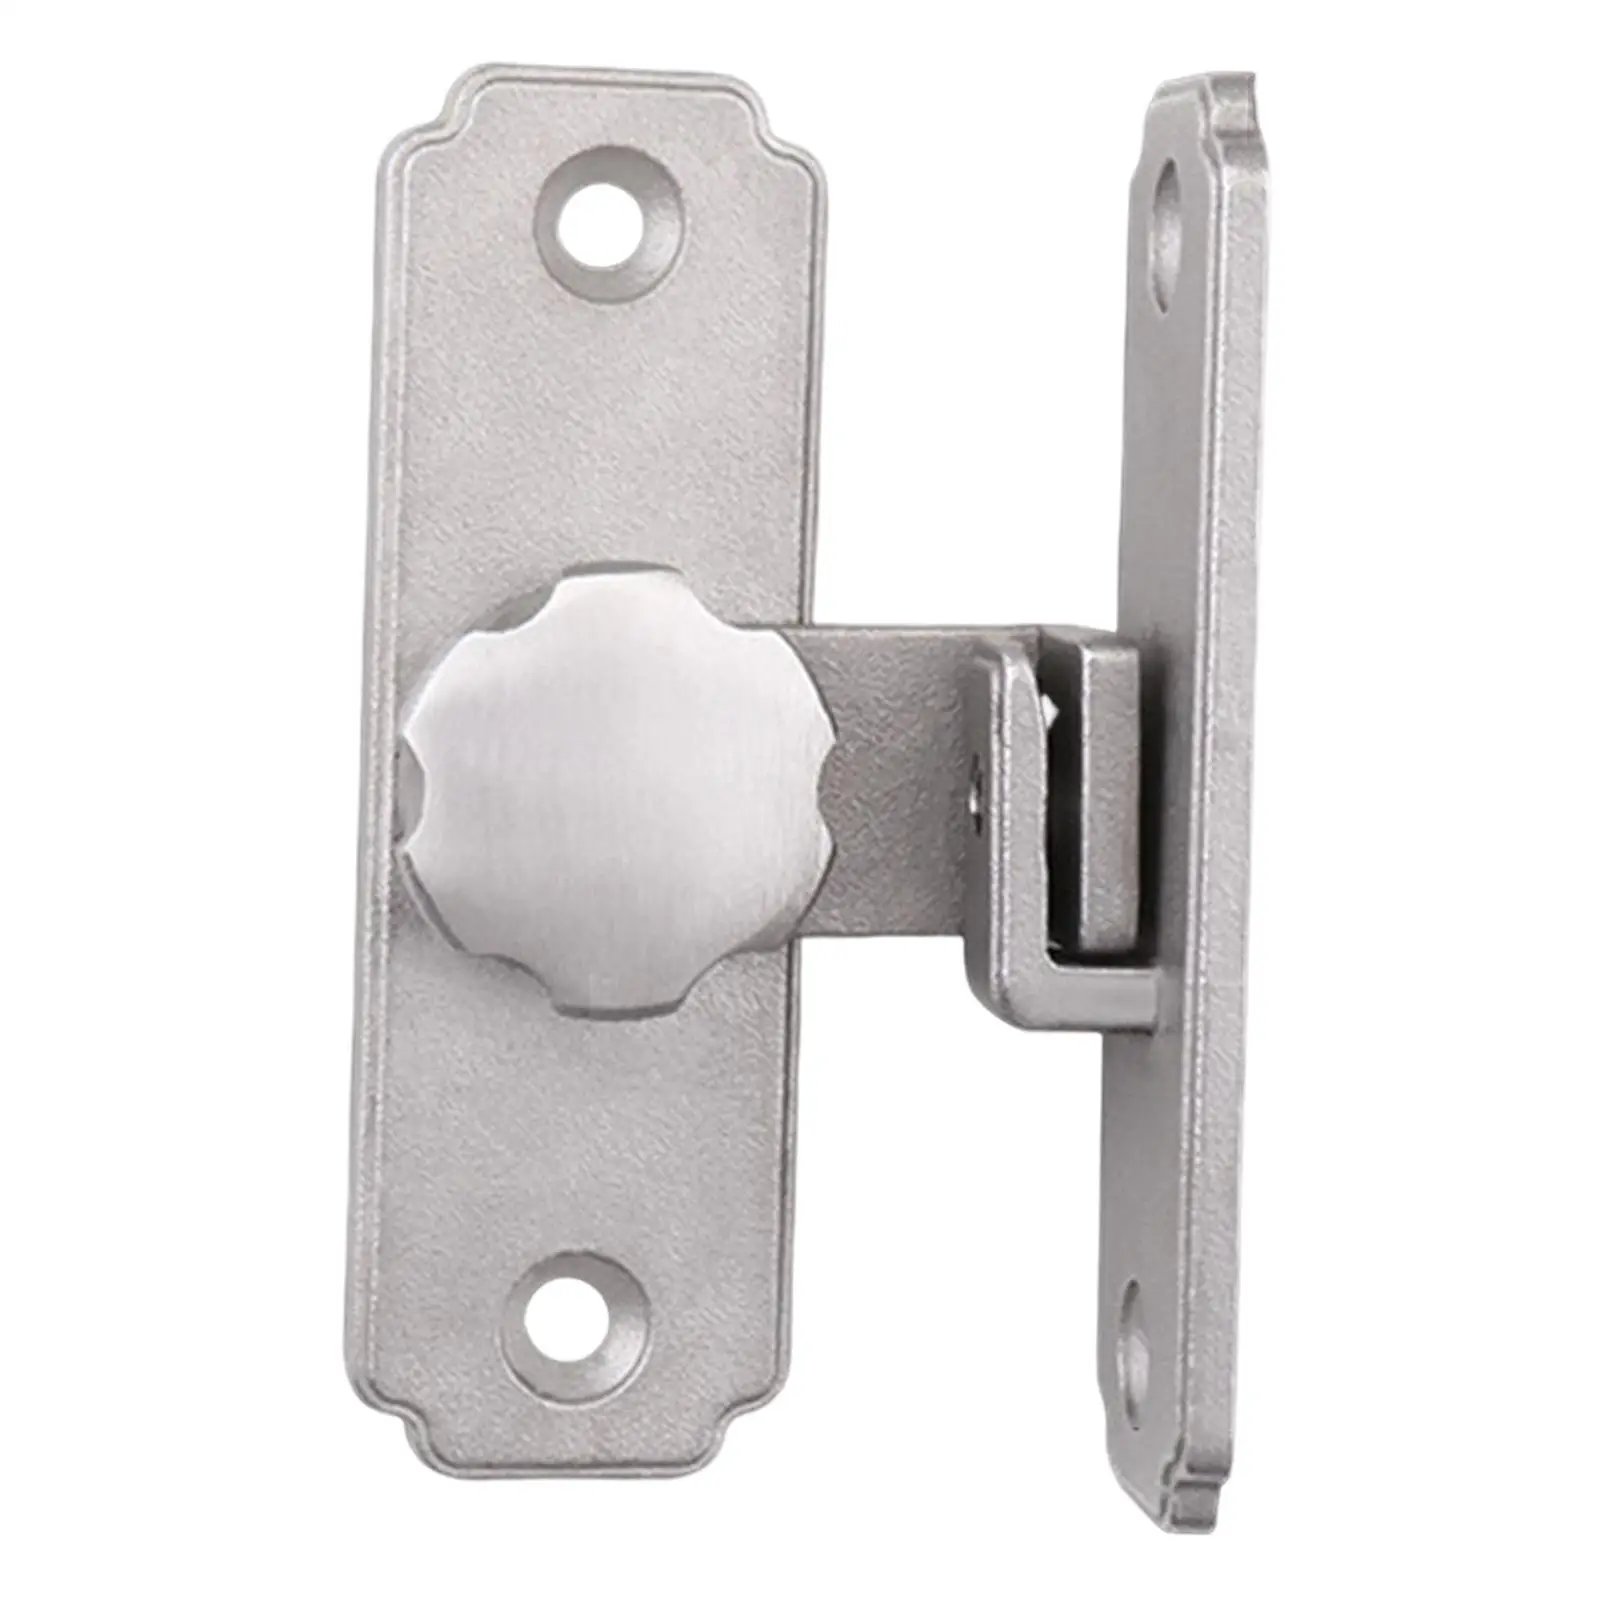 Durable Barn Sliding Door Buckle Latch Lock with Screws 90 Degree Hasps Lock for Outdoor Garden Garage Accessories Hardware